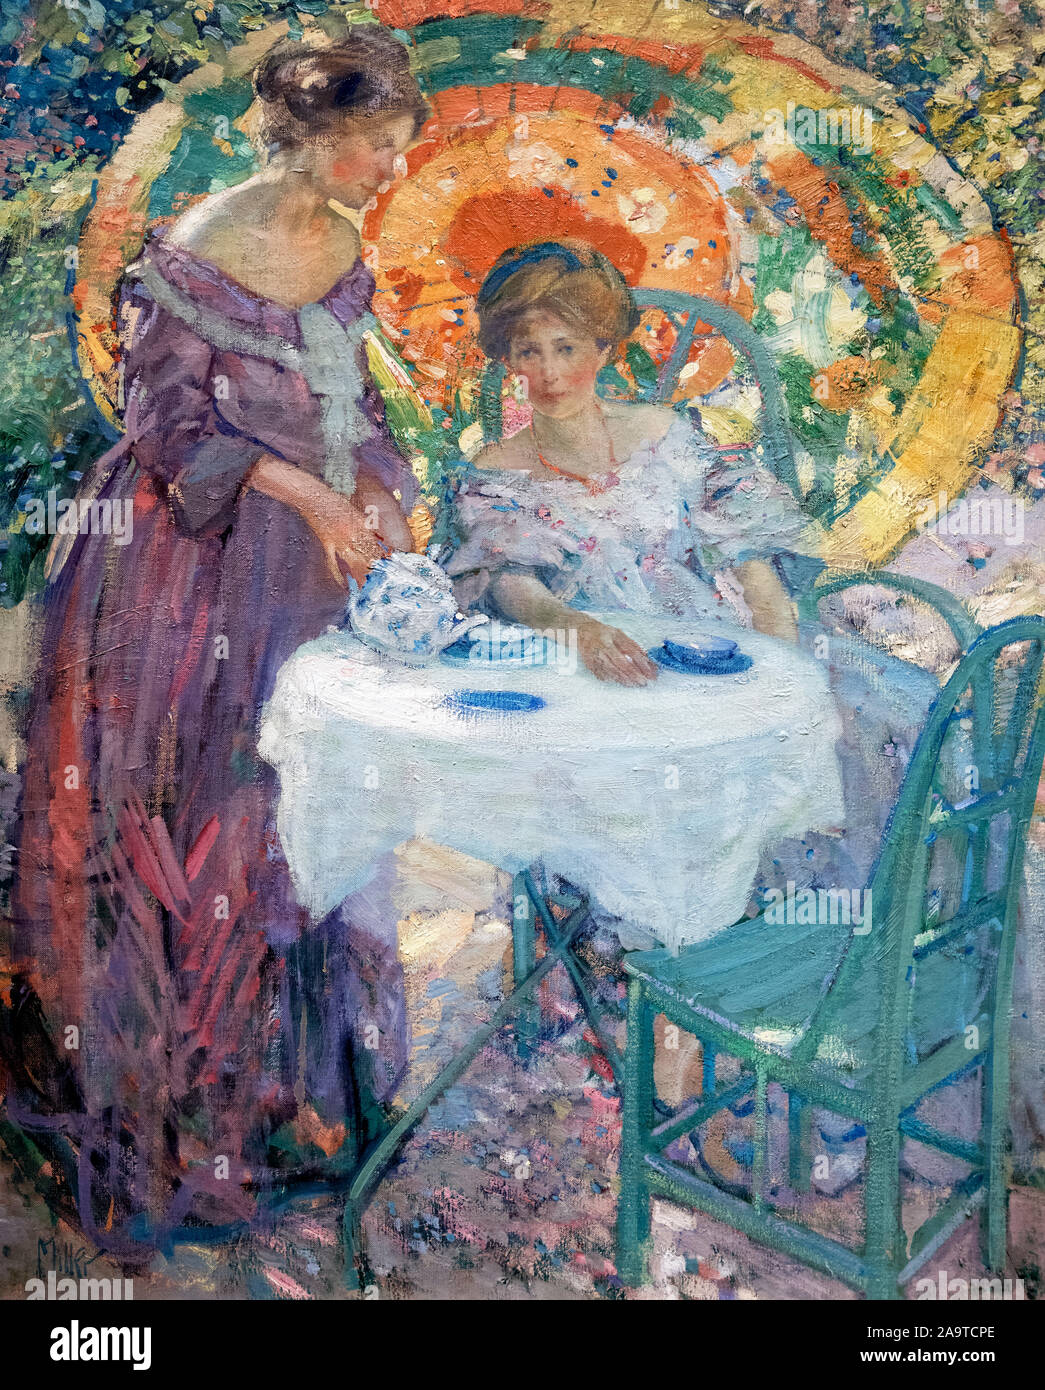 Le thé de l'après-midi par Richard Emile Miller (1875-1943), huile sur toile, 1910 Banque D'Images